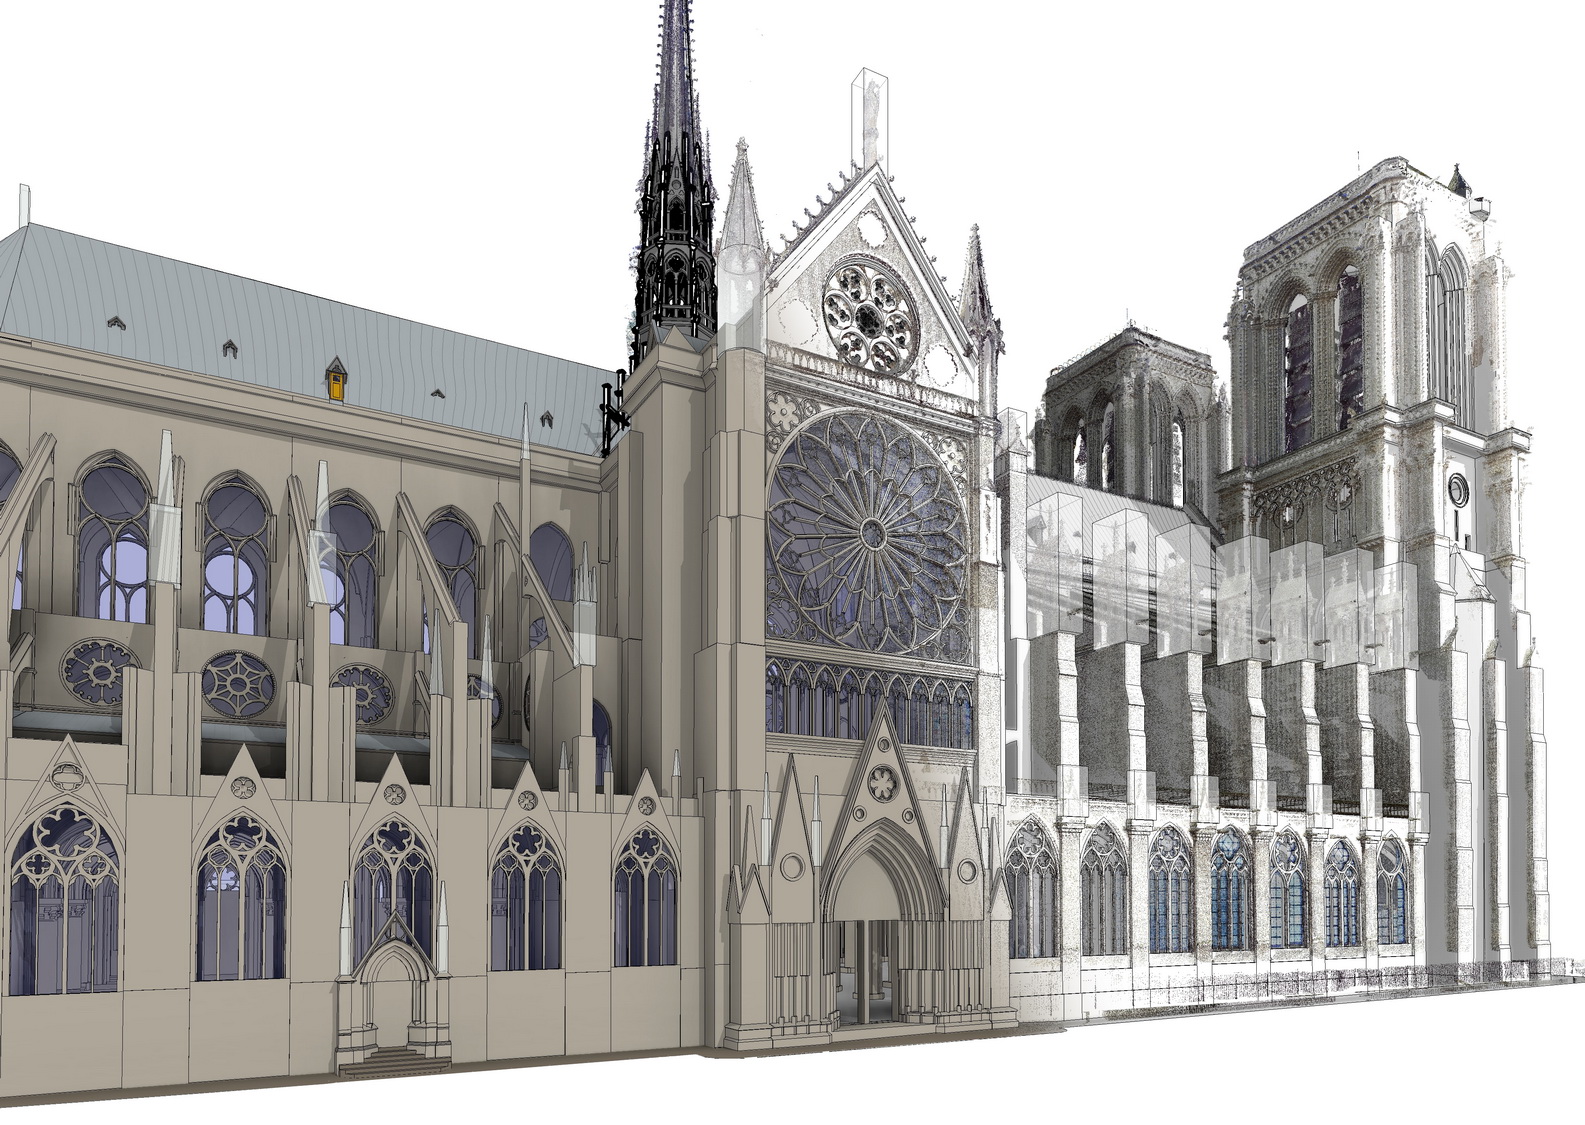 Art Graphique & Patrimoine – Le projet est une initiative Autodesk, maquette offerte en mécénat à l’Etablissement publique de Notre-Dame de Paris.